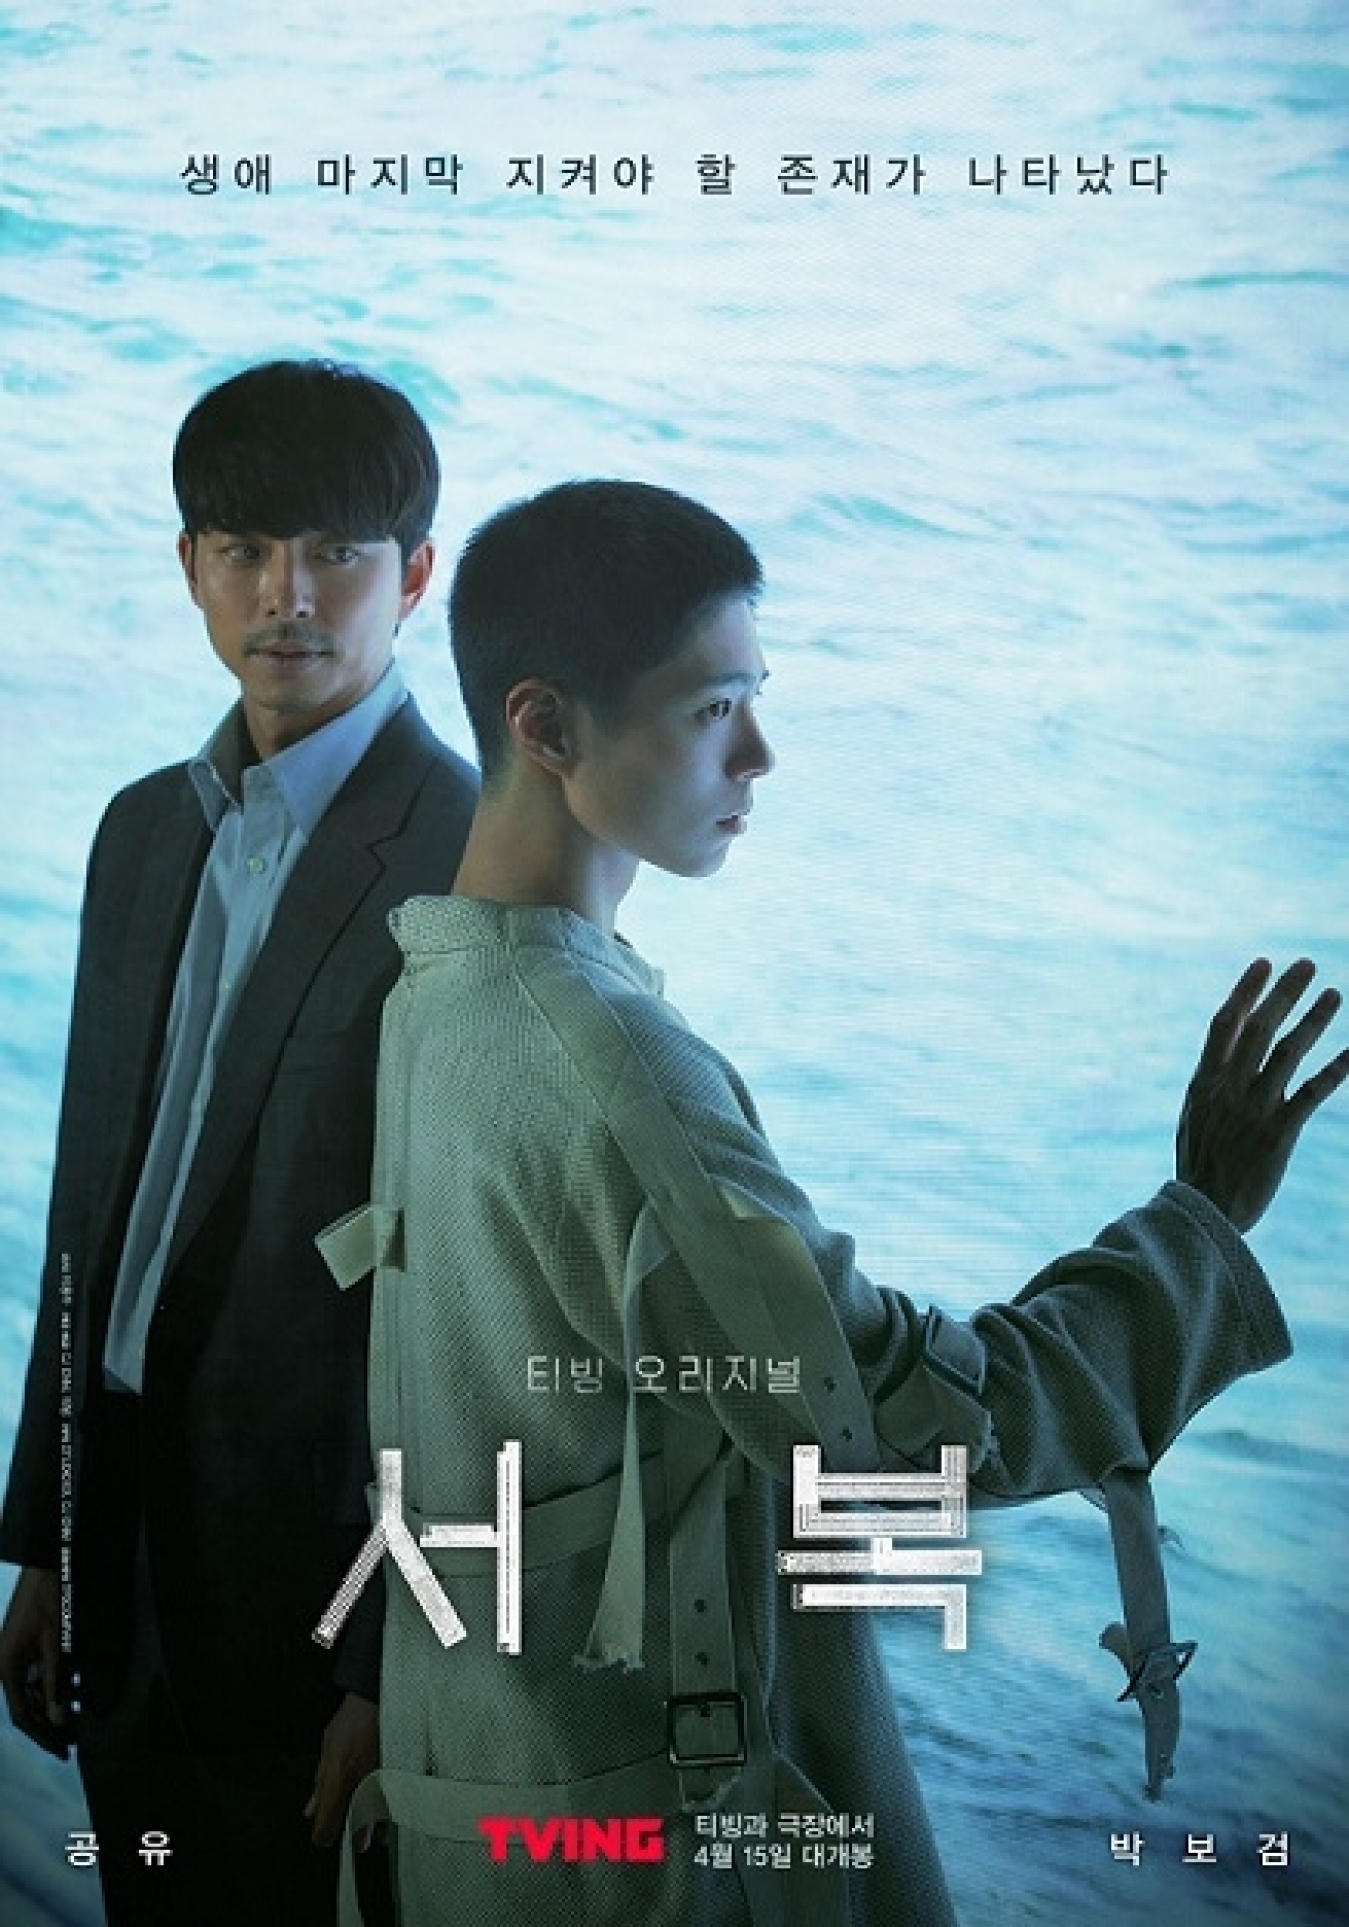 배우 공유와 박보검이 출연한 영화 '서복'이 박스오피스 1위로 출발했다.  [사진=CJ ENM, 티빙]